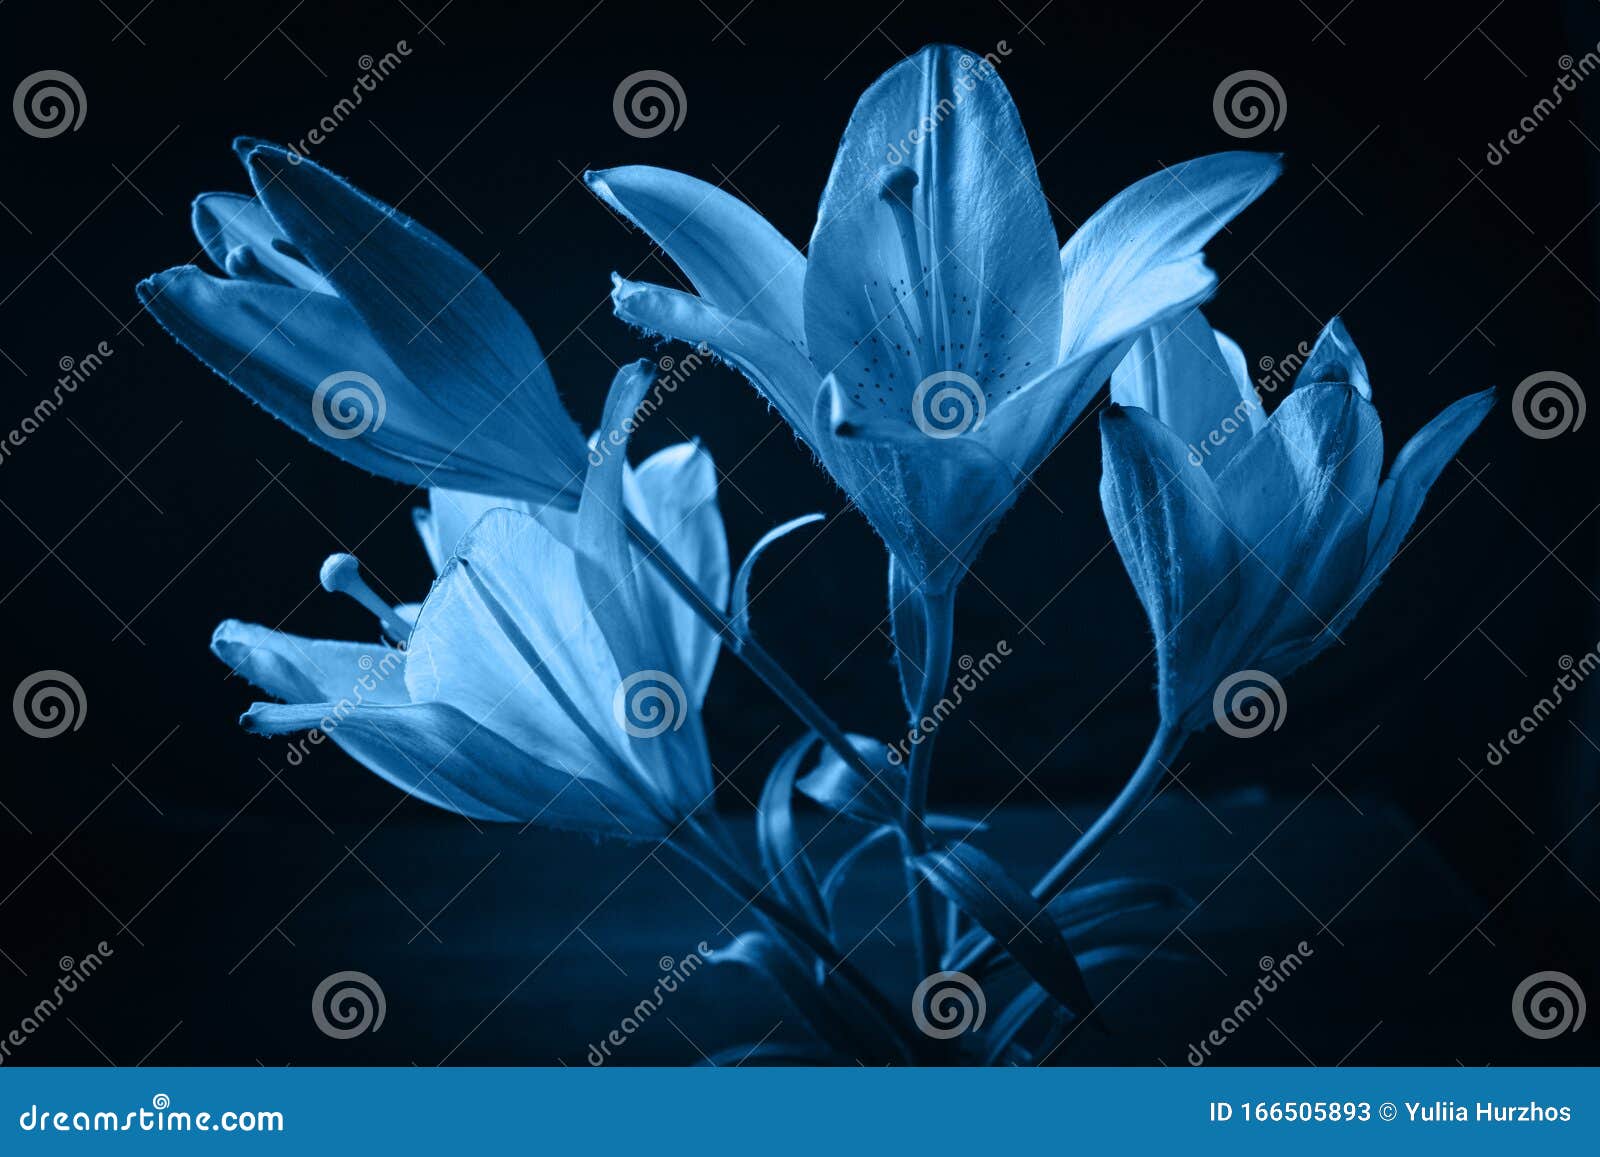 Pantone Classique Frais 2020 En Bleu Concept De Couleur De L'année Fleur De  Lys Sensible Les Contours De La Fleur Dans De L'air Image stock - Image du  papier, festif: 166505893